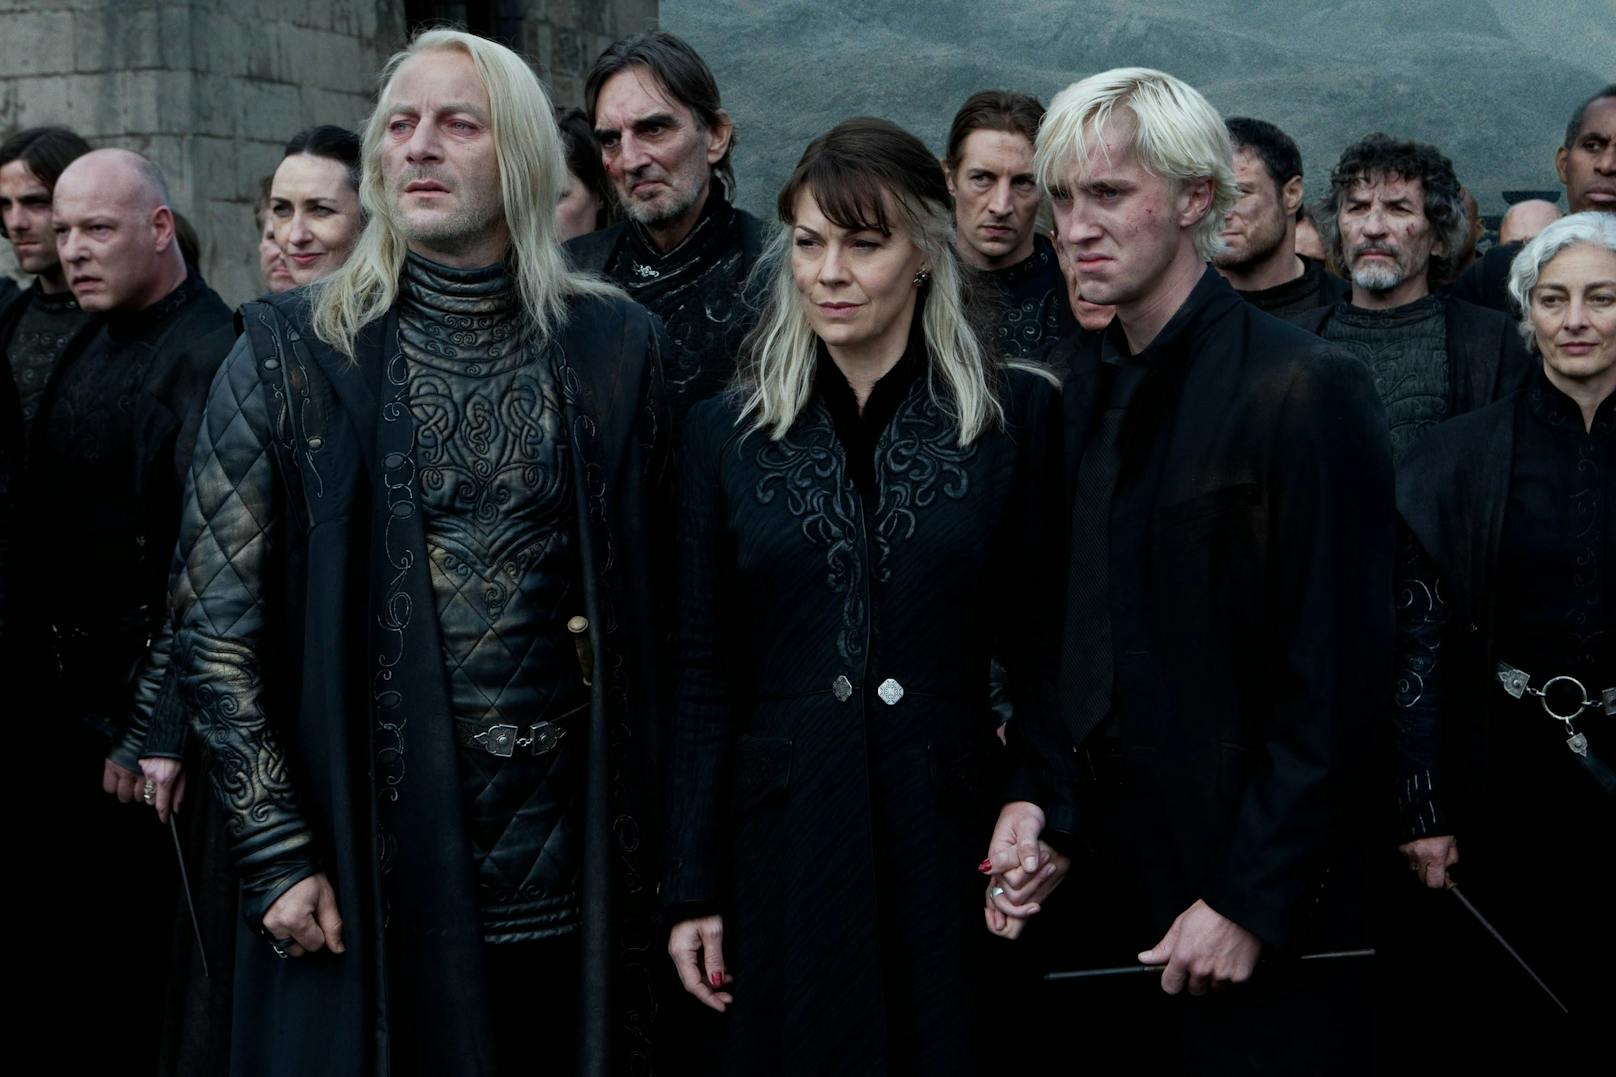 Jason Isaacs als Lucius Malfoy, Helen McCrory als Narcissa Malfoy und Tom Felton als Draco Malfoy in "Harry Potter und die Heiligtümer des Todes".